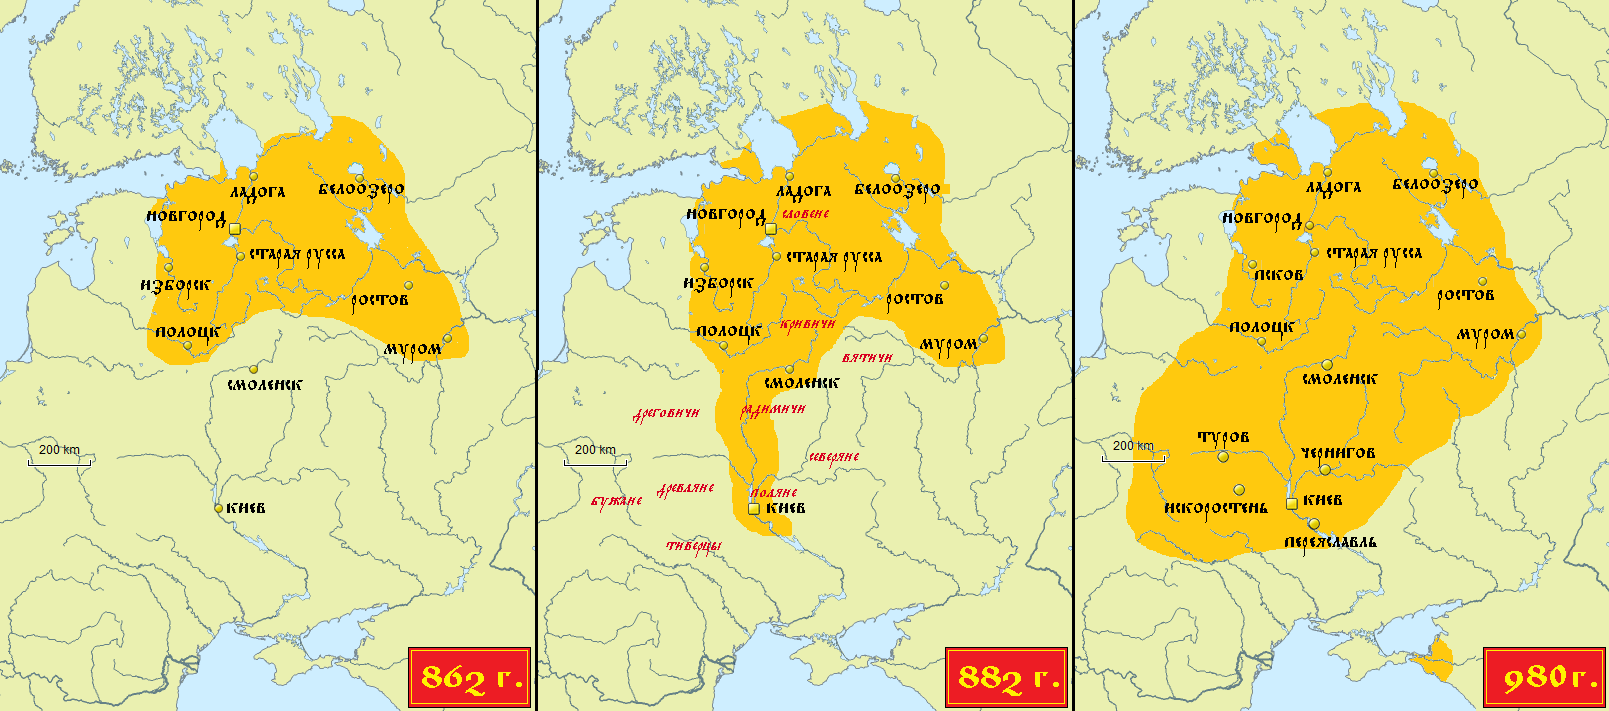 Расширение территории Древнерусского государства в IX-X вв.